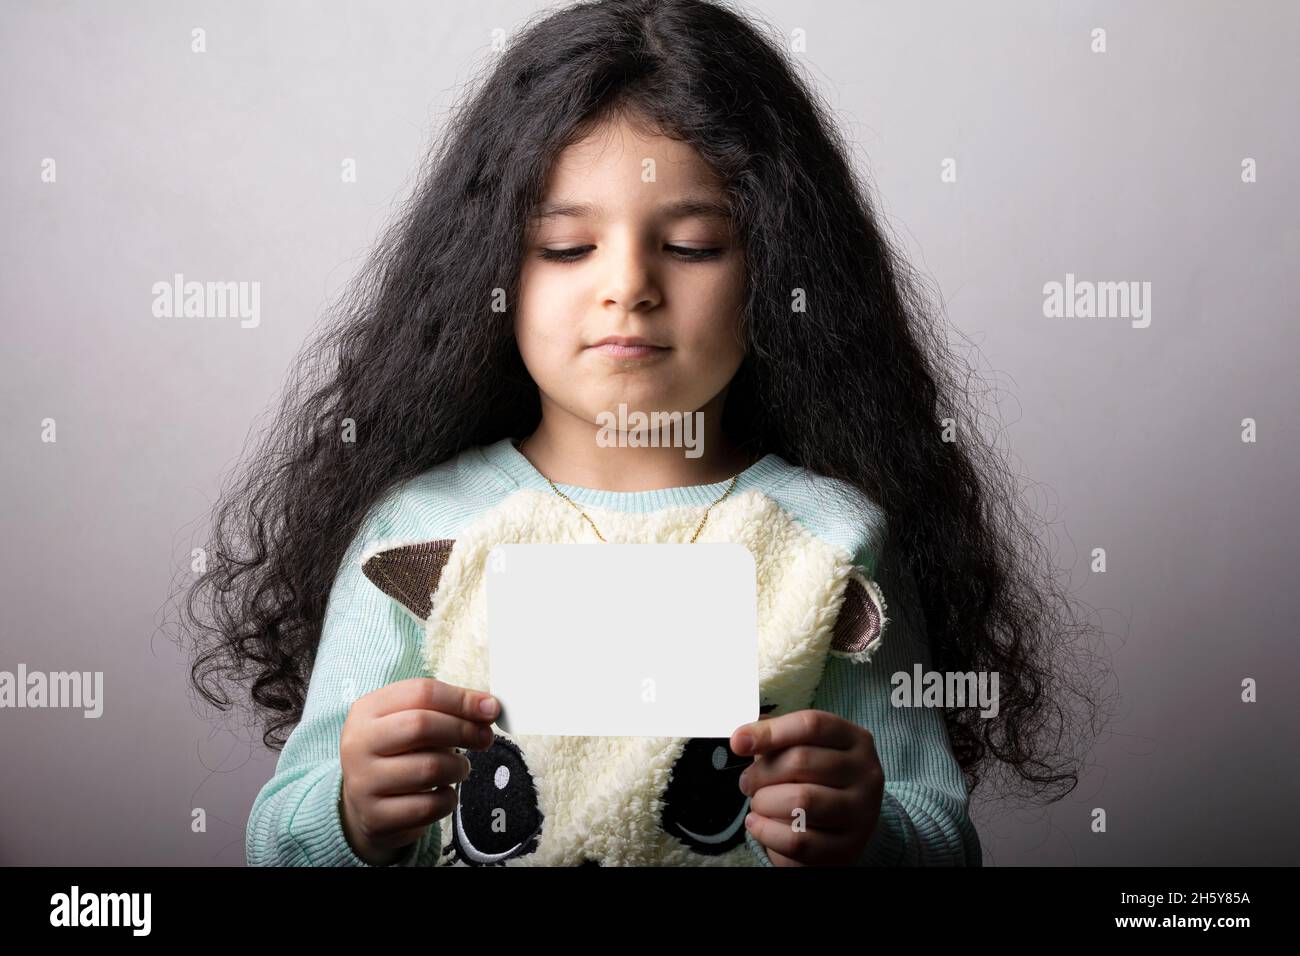 Kleines Mädchen Porträt hält eine Flash-Karte in der Hand, Vorschule Bildungsmaterial Lernobjekte. Flash-Karte Auswahlpfad enthalten. Stockfoto